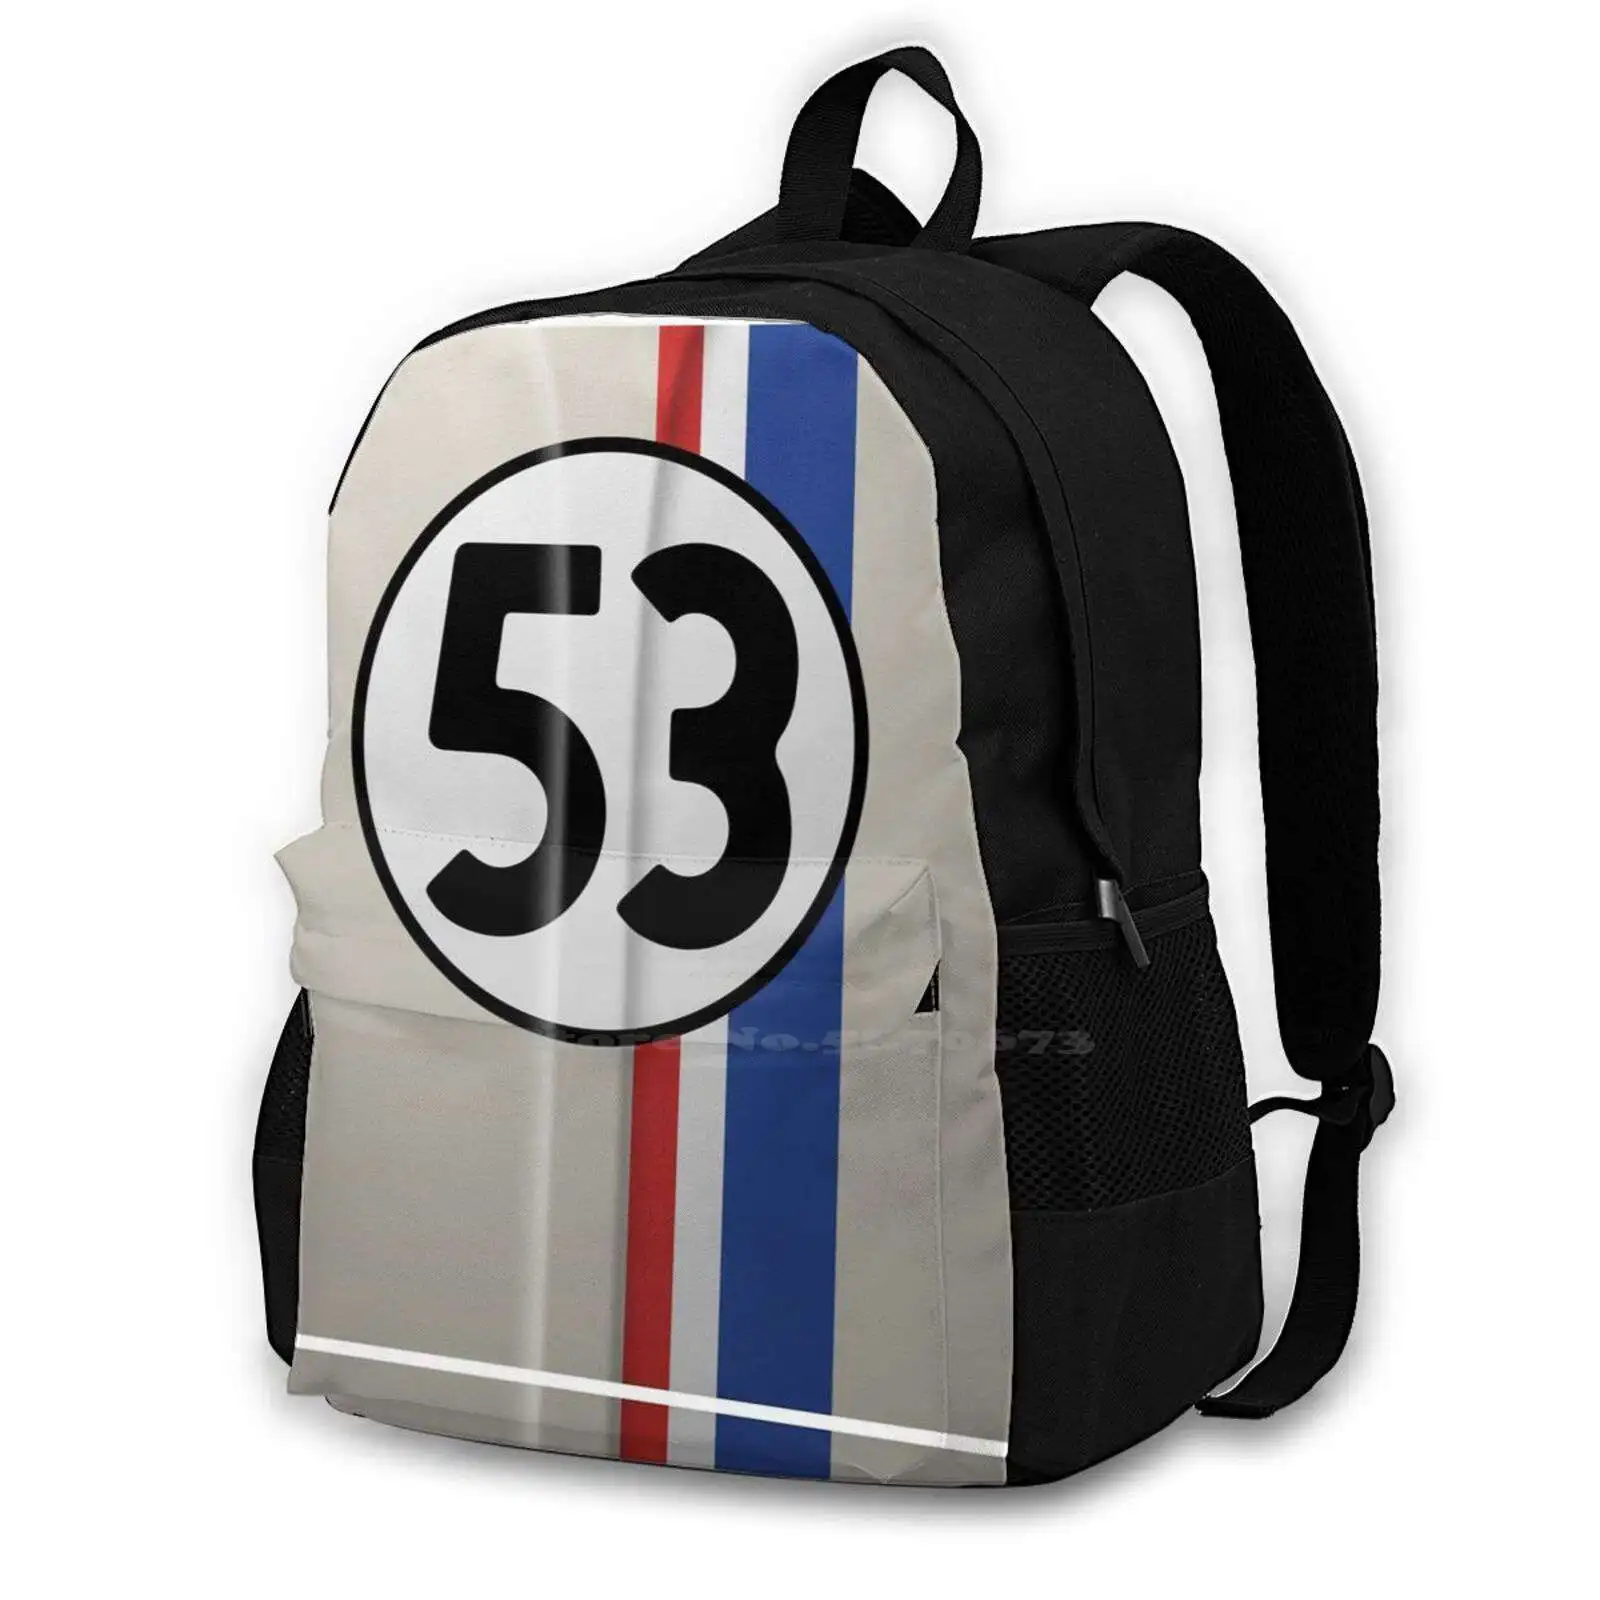 

Рюкзак Herbie 53 «The Love Bug» для студентов, школьный, дорожный рюкзак для ноутбука, Herbie Beetle Car Lovebug